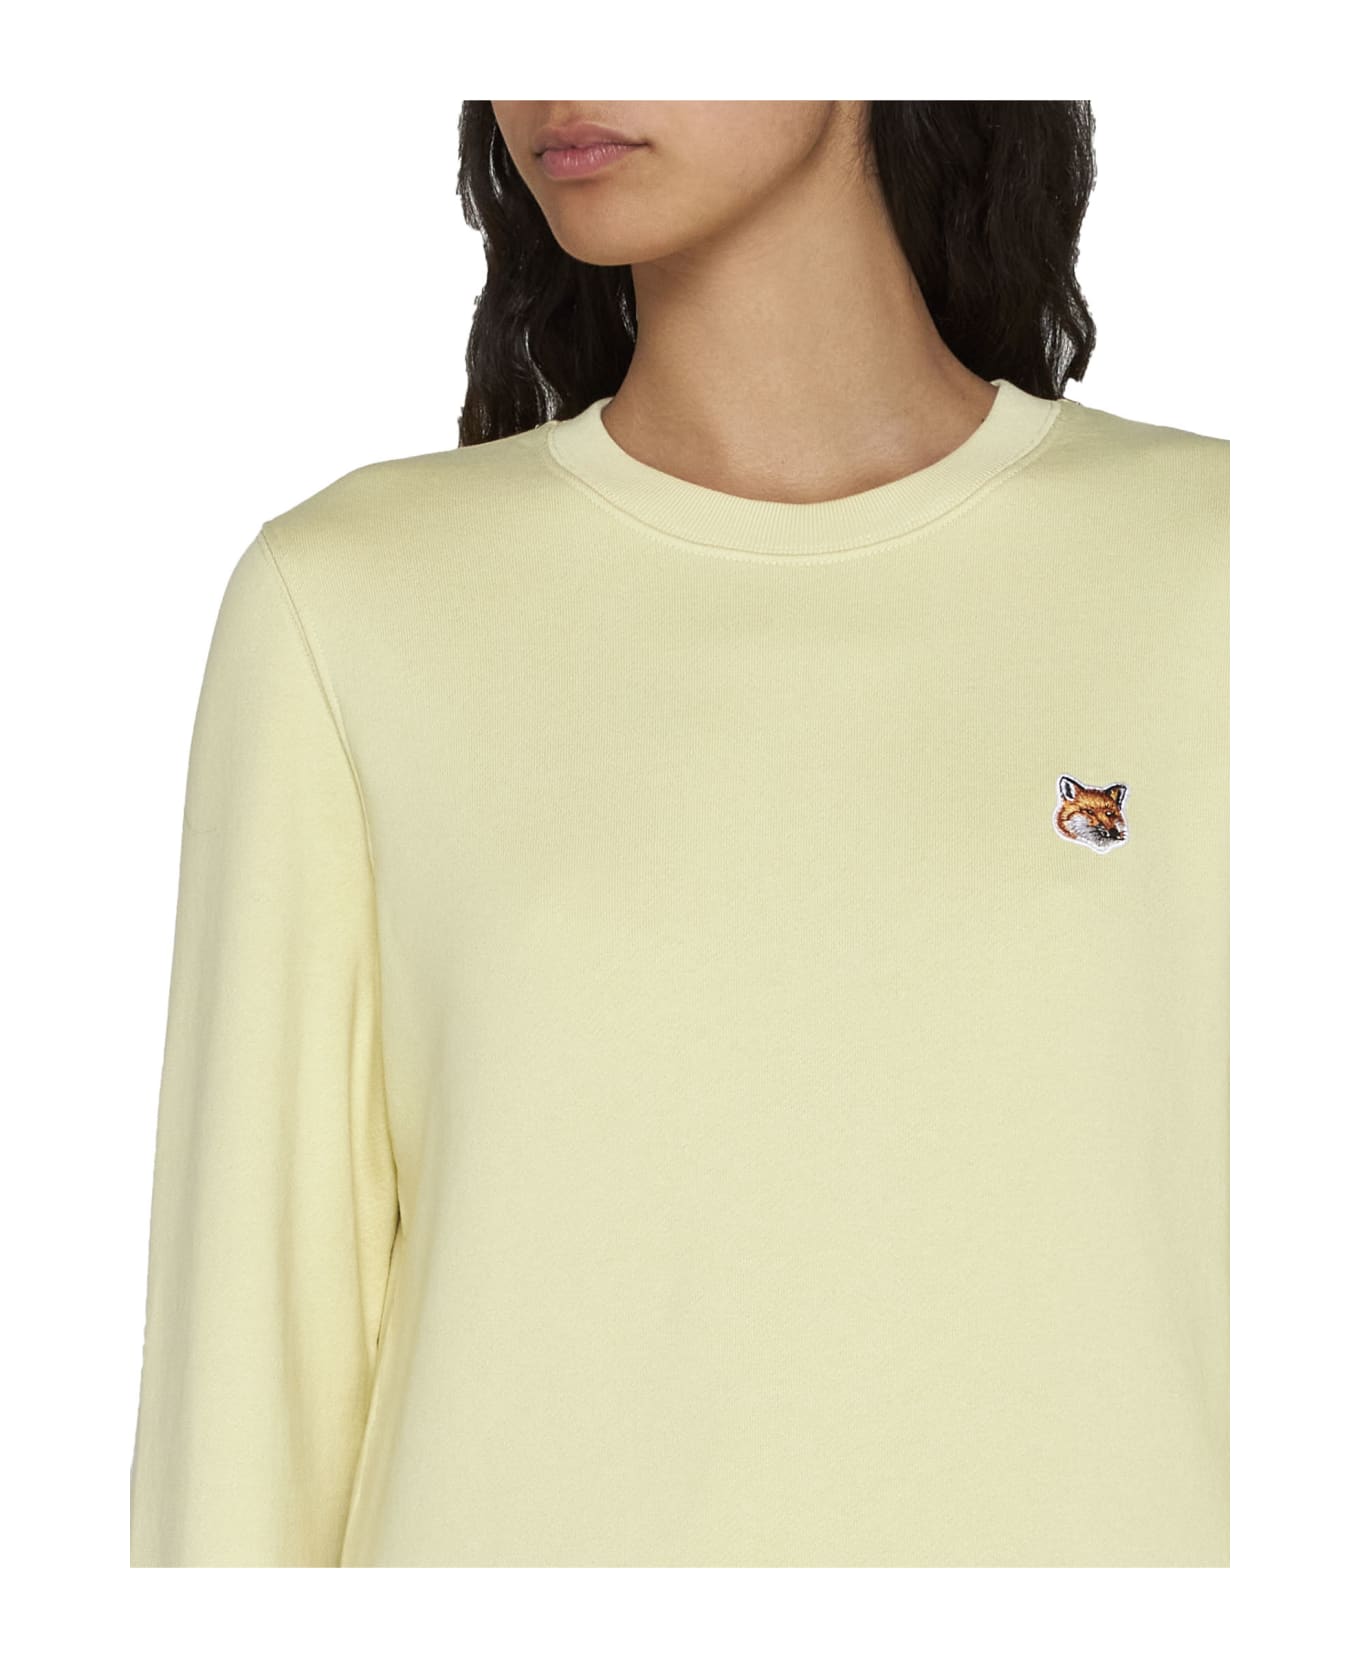 Maison Kitsuné Sweater - Chalk yellow